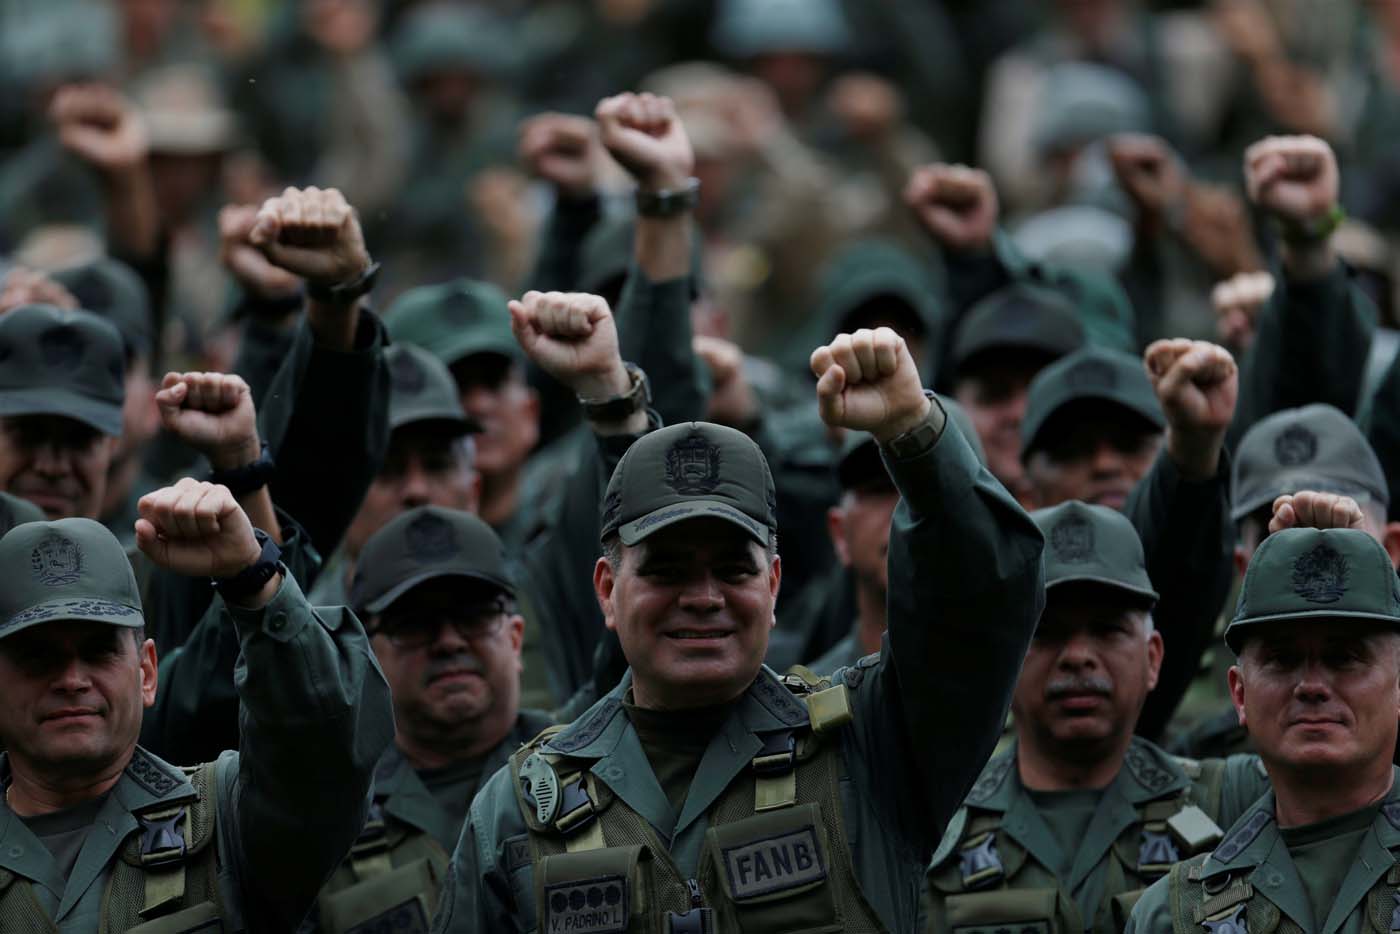 Gobierno aprobó a militares créditos adicionales que superan el Presupuesto Nacional 2018, revela Transparencia Venezuela